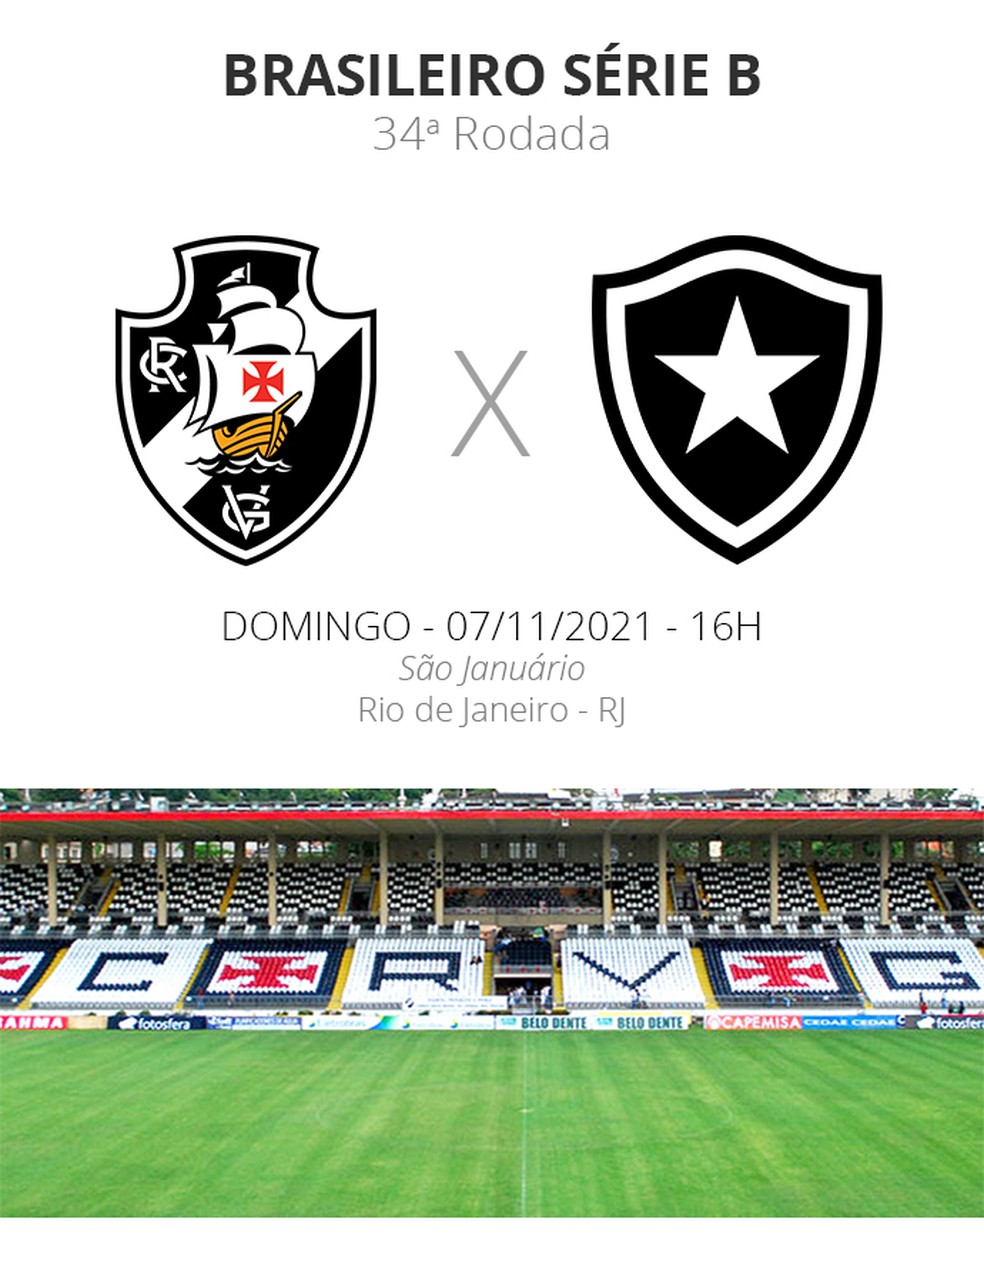 Vasco x Botafogo ao vivo: onde assistir ao jogo do Brasileirão online